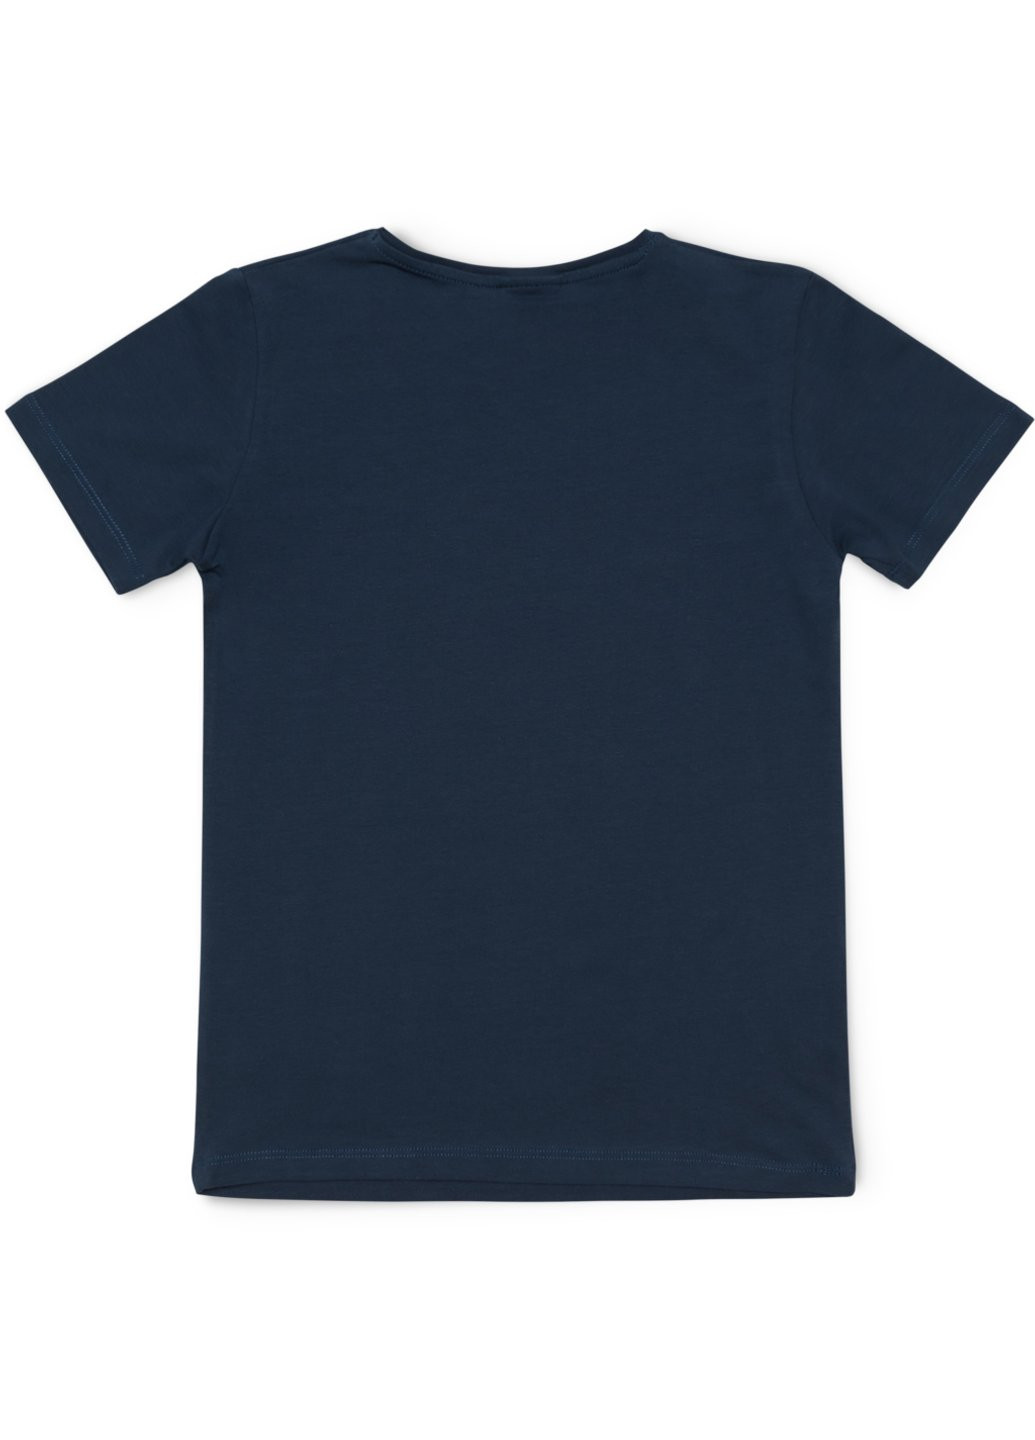 Комбинированная футболка детская базовая (3030-146-blue) Lovetti